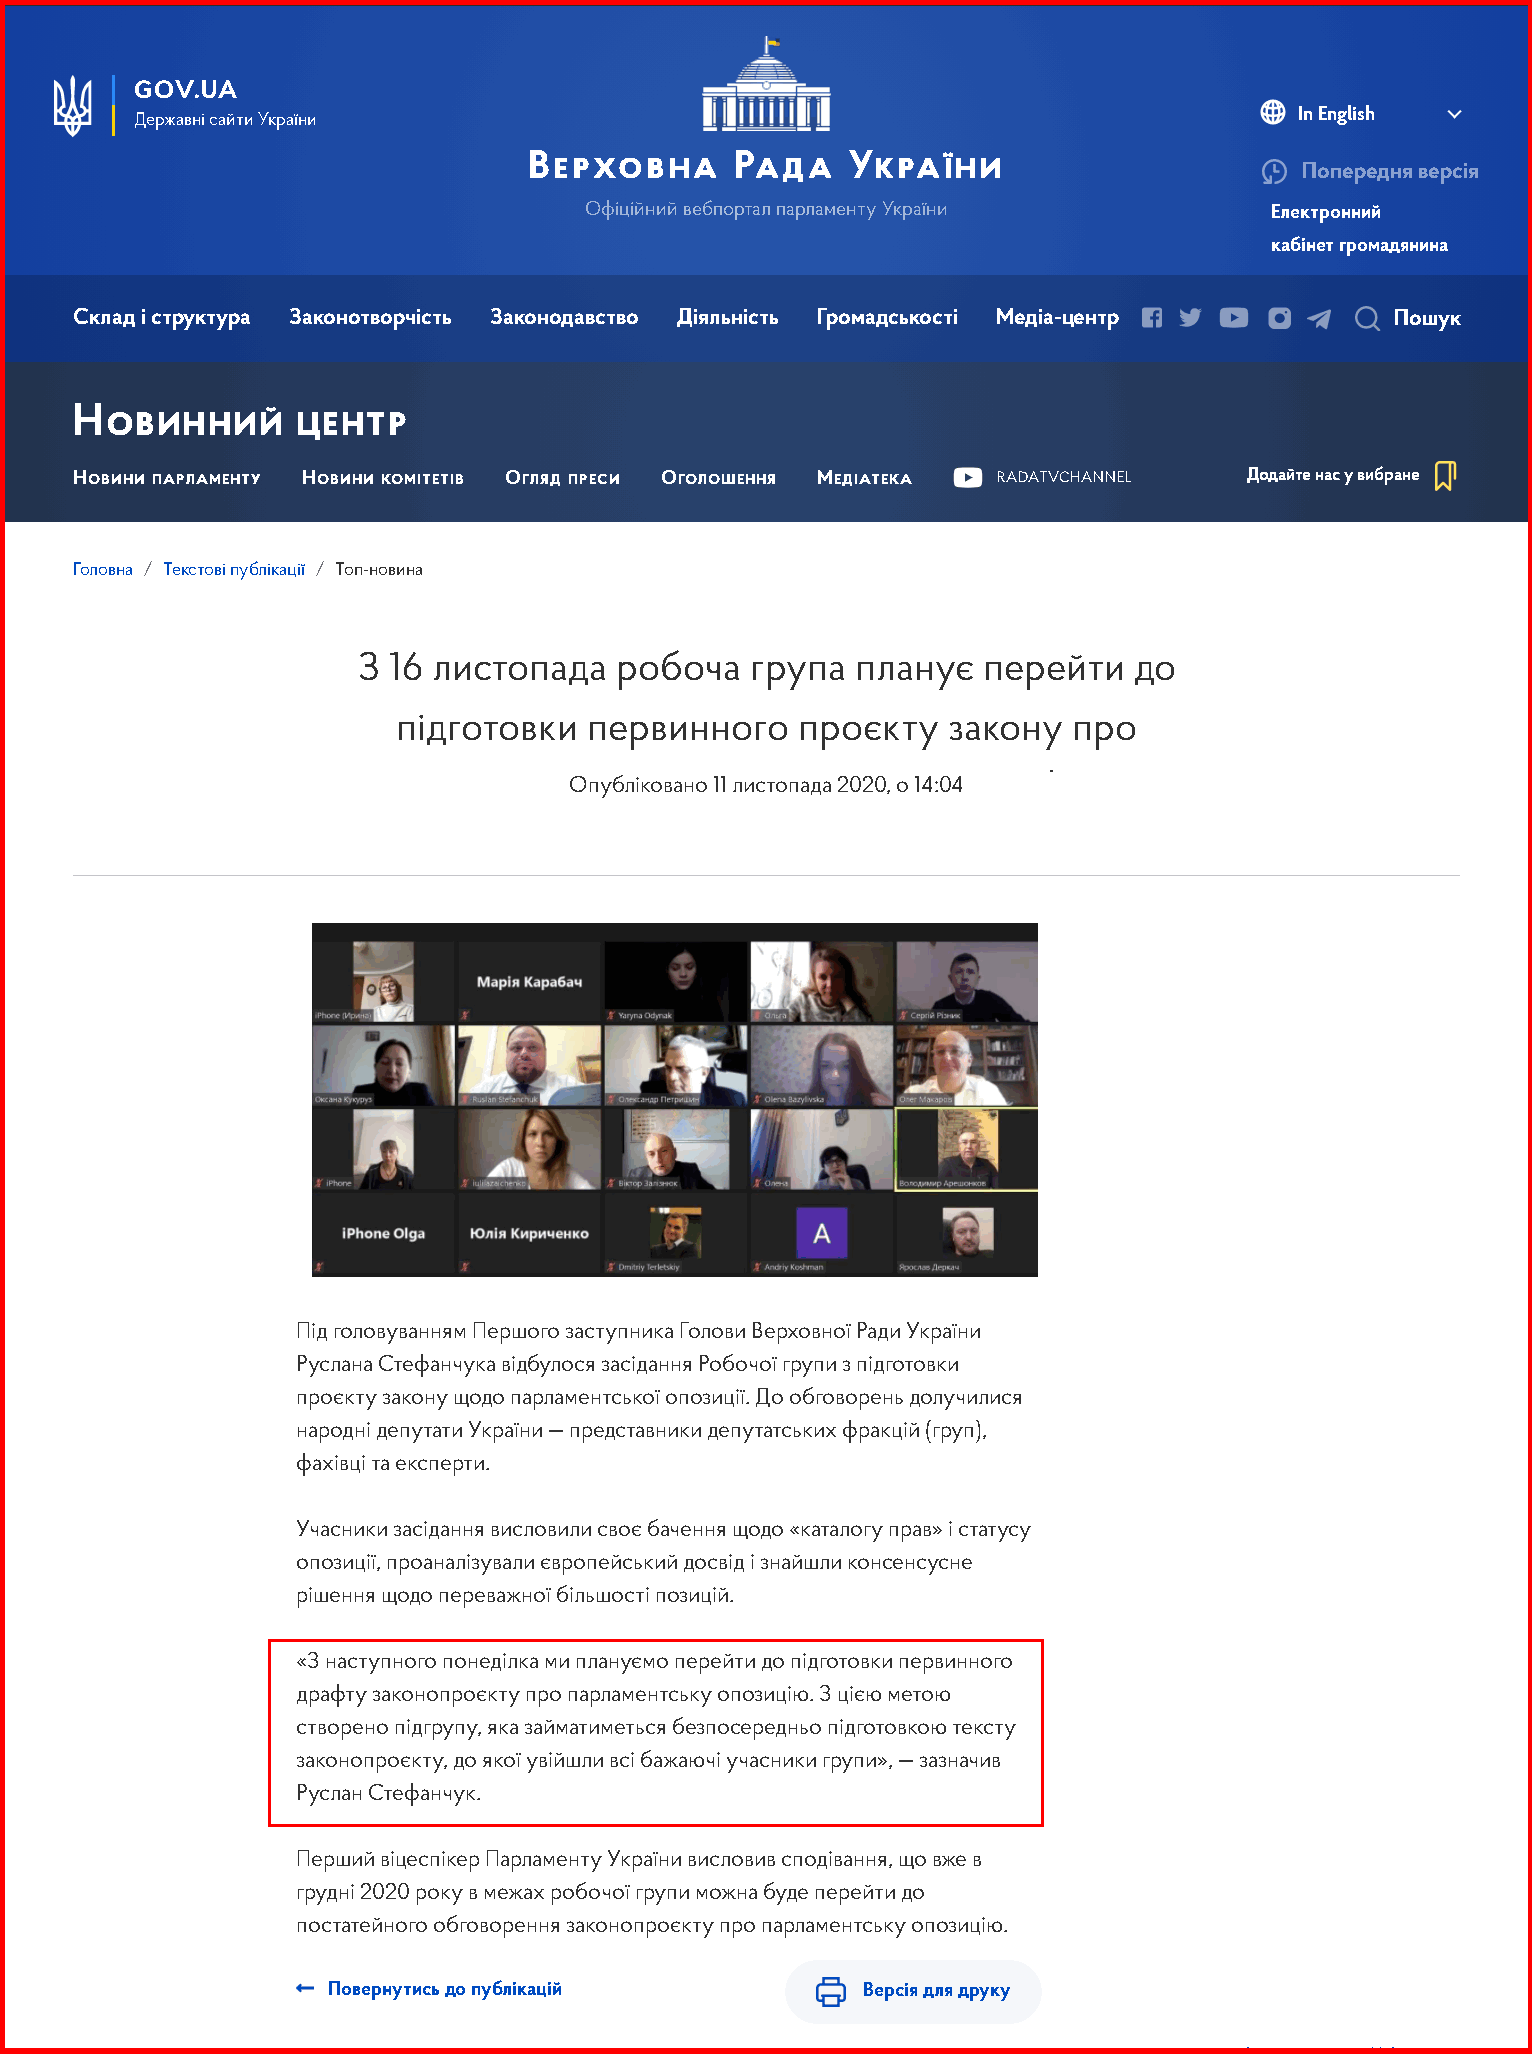 https://www.rada.gov.ua/news/Novyny/199466.html